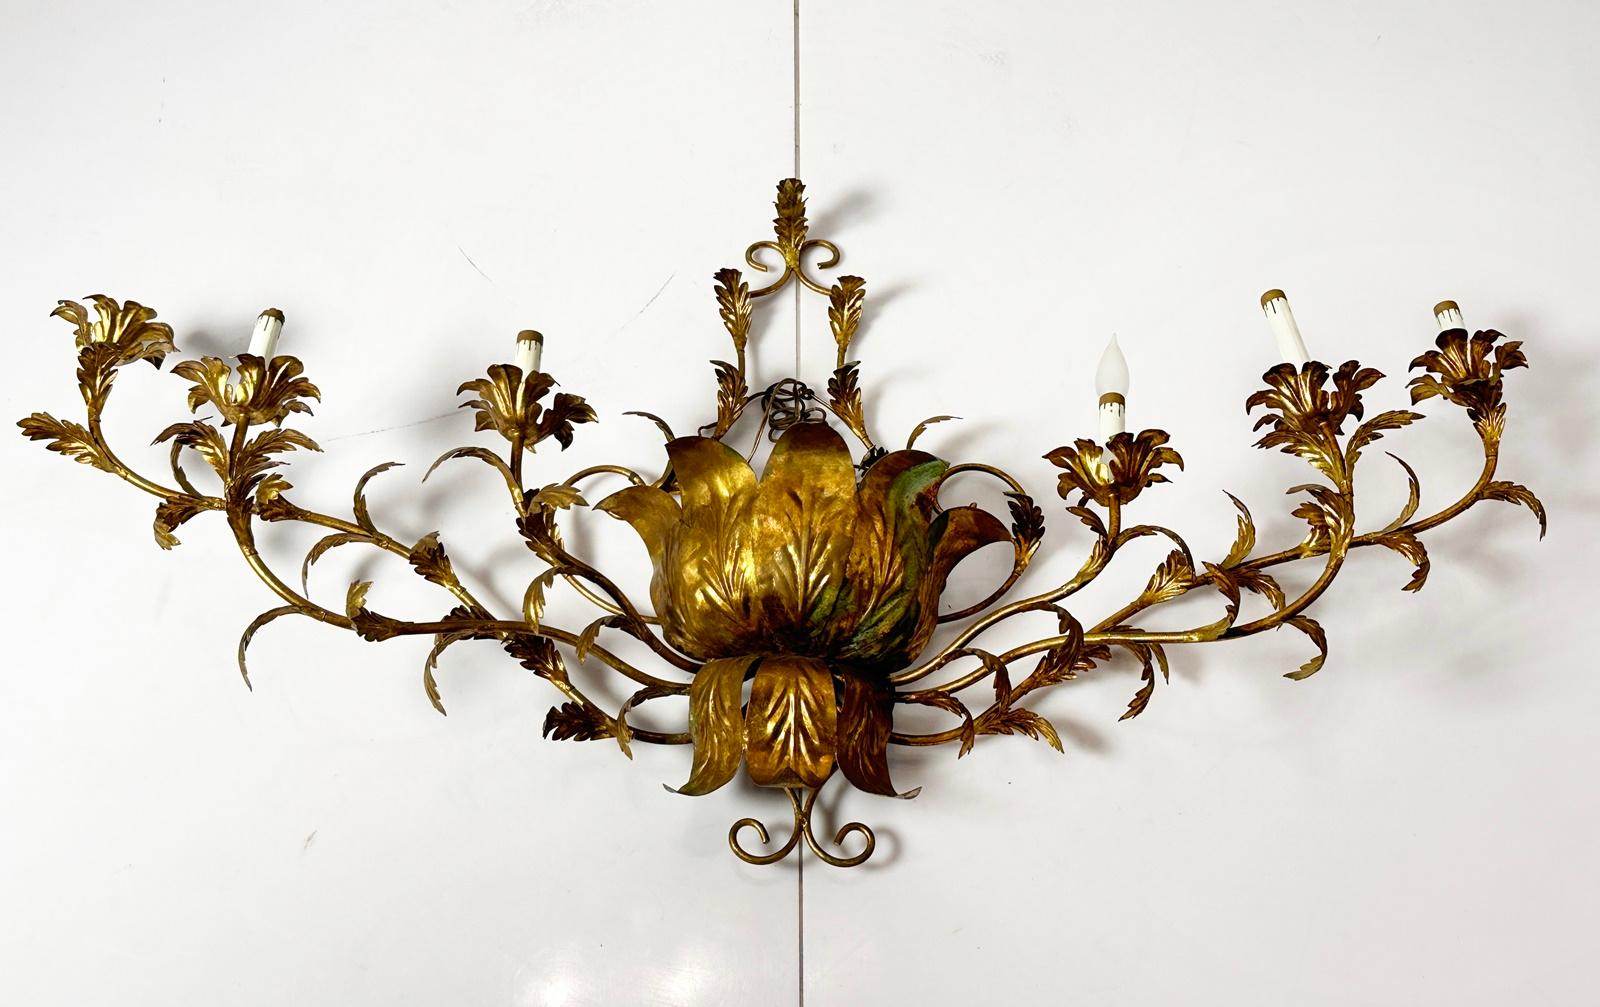 Unsere exquisite Sechs-Licht-Leuchte aus vergoldetem Metall ist ein wahres Zeugnis für Eleganz und Handwerkskunst. Dieser Wandleuchter, der aus der geschätzten Design-Ära des Italiens der 1970er Jahre stammt, strahlt Opulenz und Raffinesse aus.